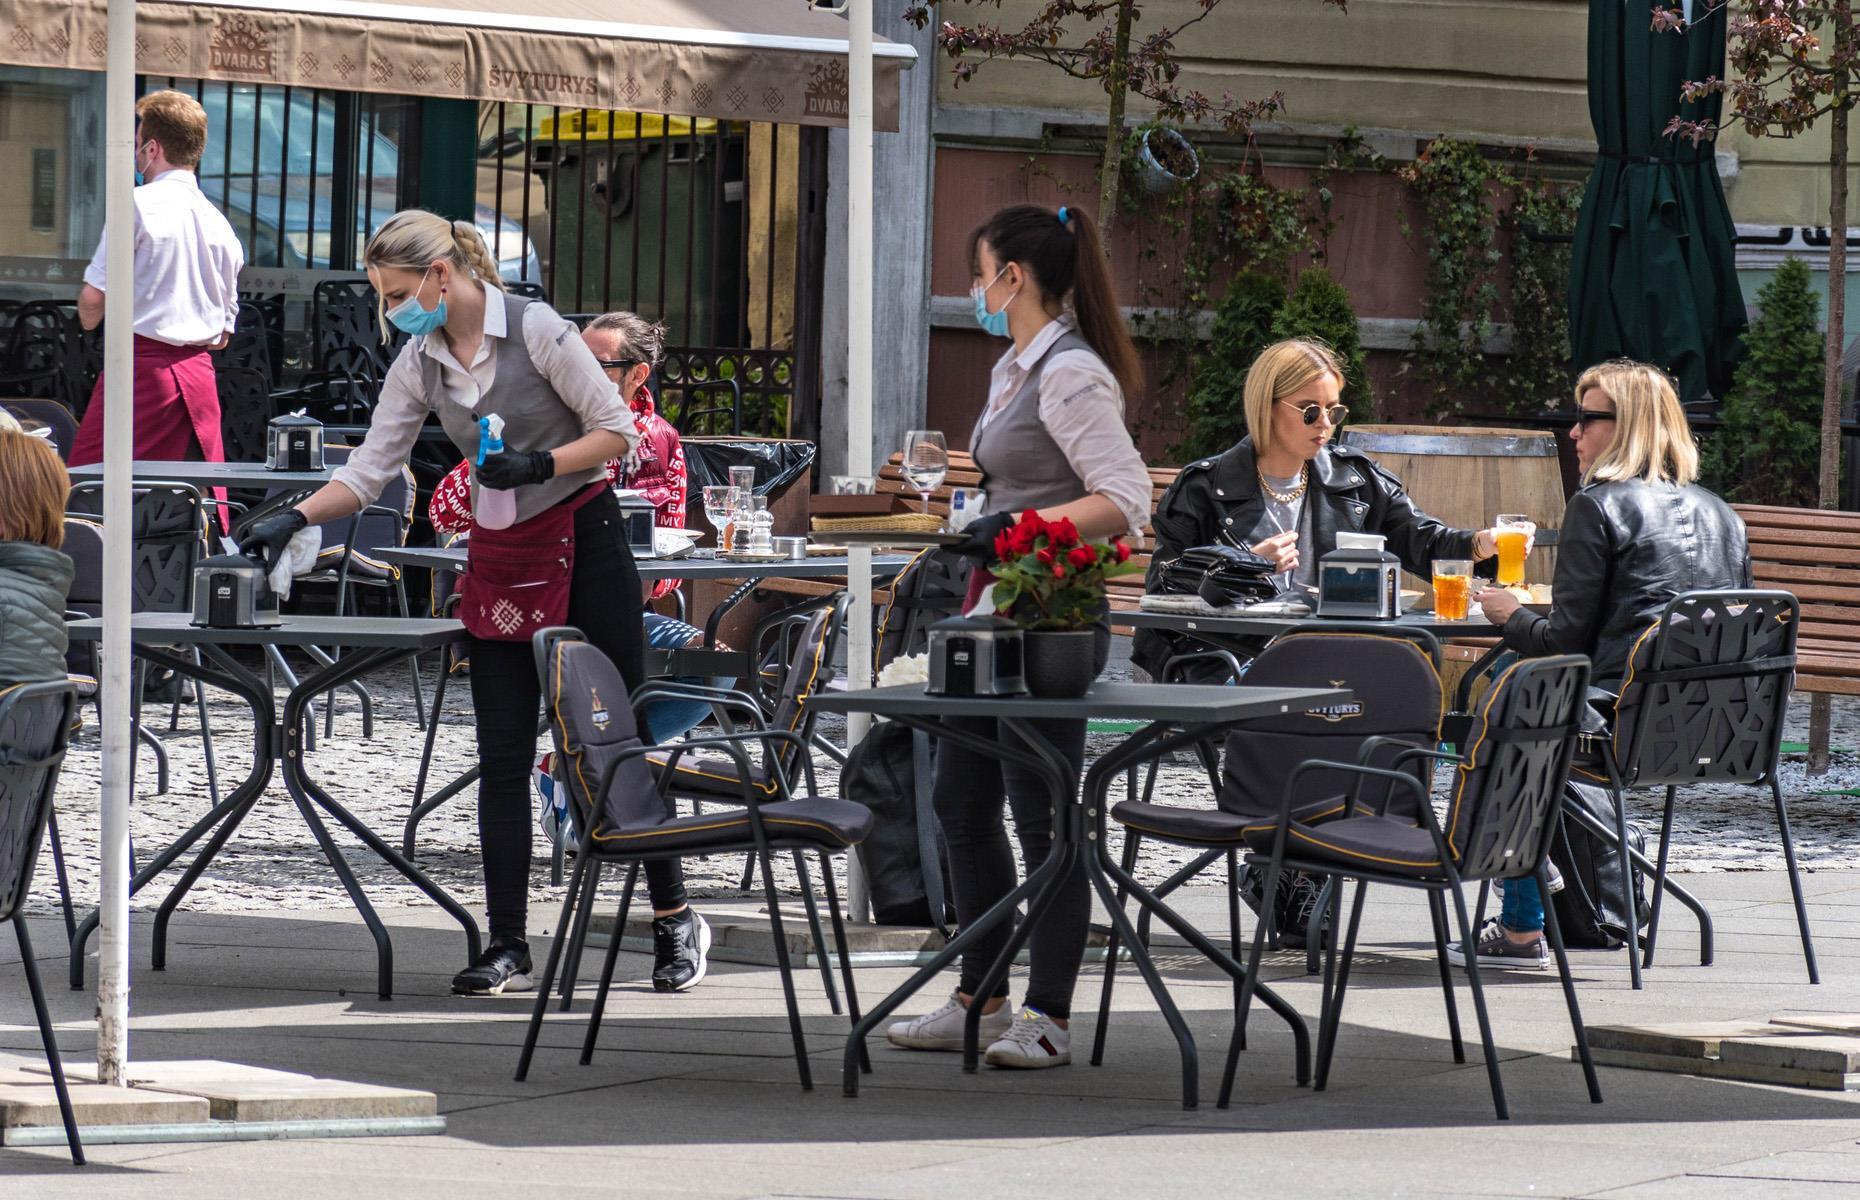 Vilnius, Lithuania: The city has become an open-air café